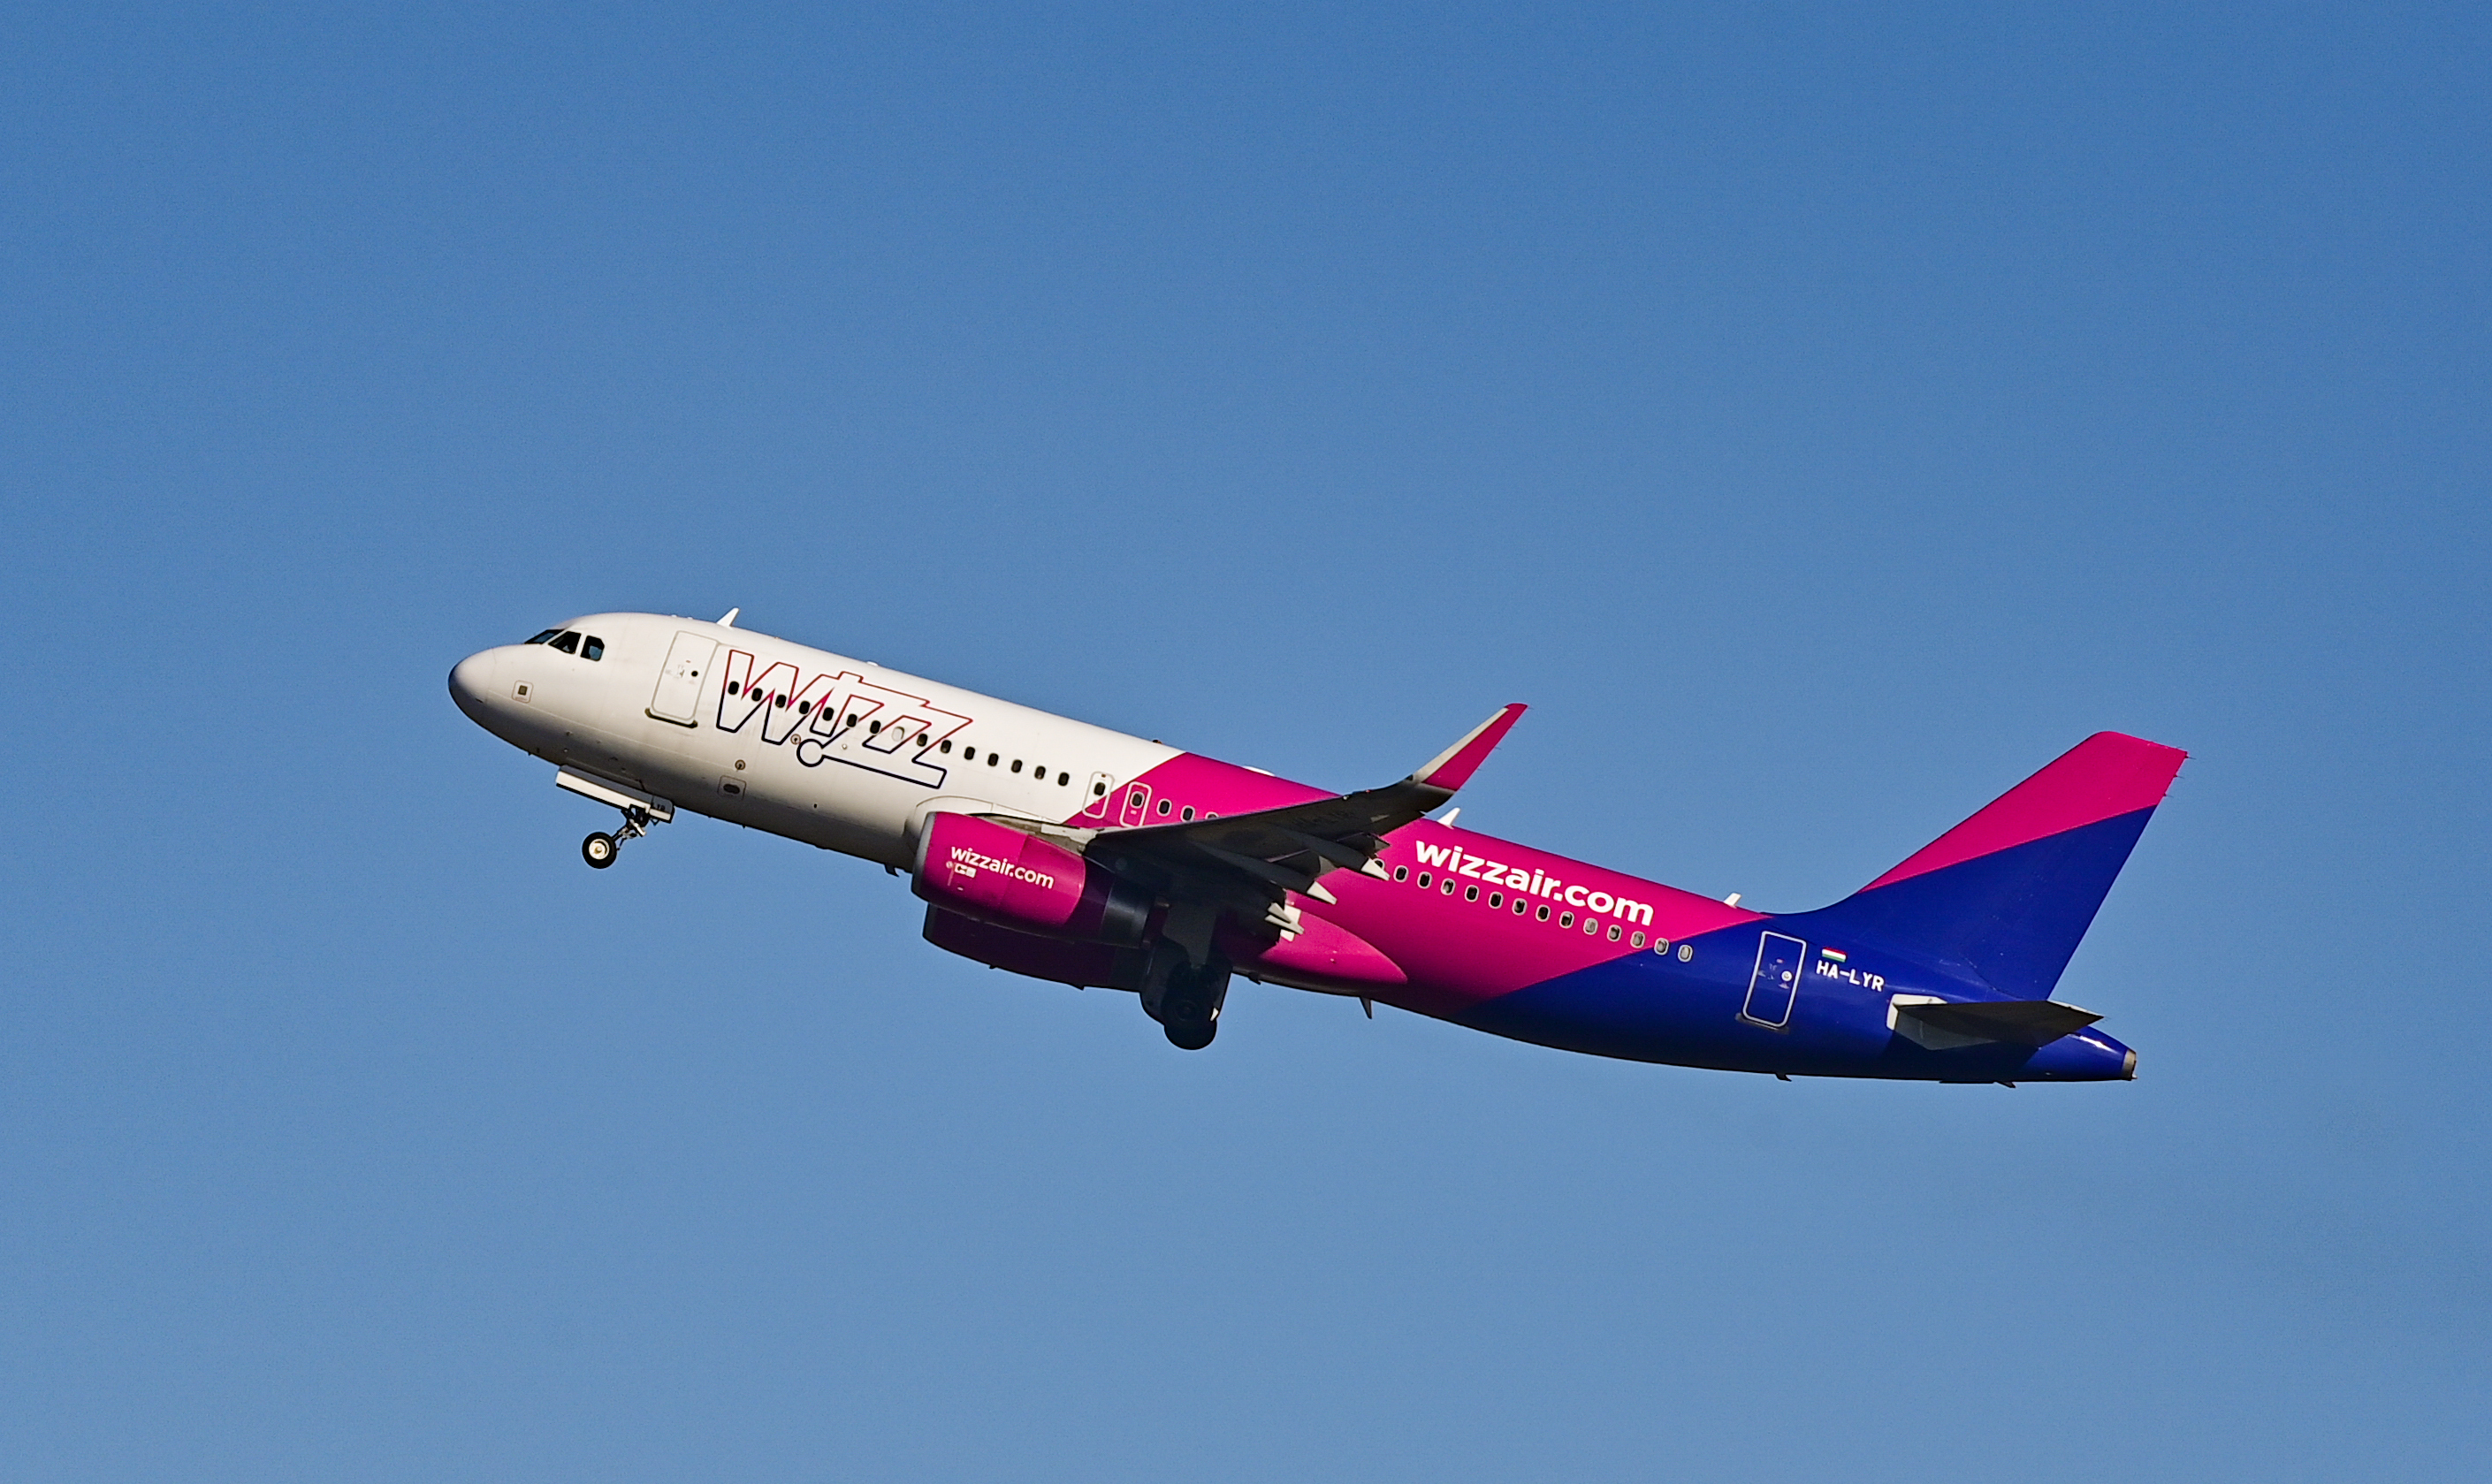 Megszívatták a magyar utasokat a Wizz Air járatán: sírtak, zokogtak a  repülőn - Blikk